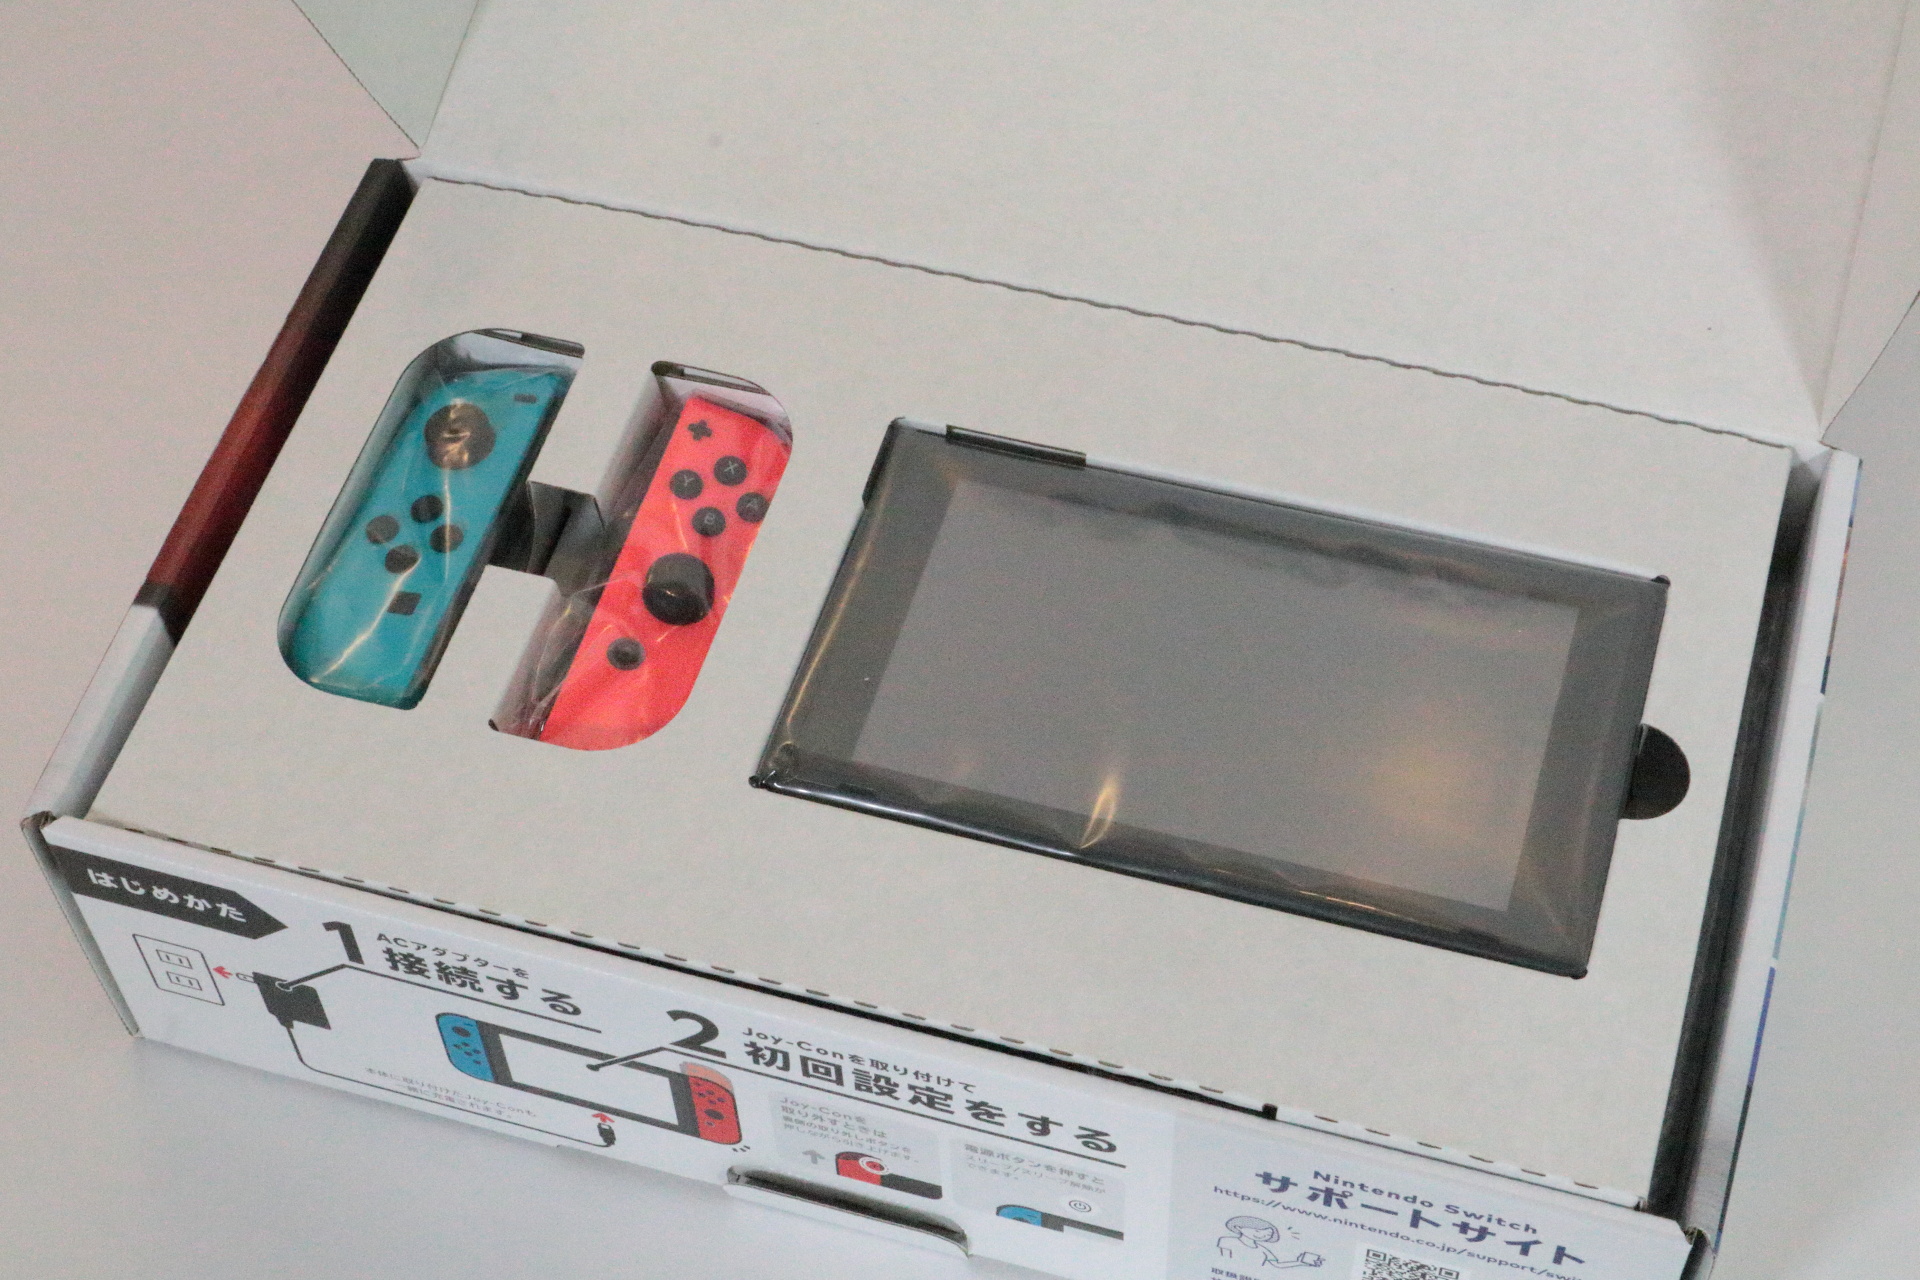 開箱 Nintendo Switch 主機第一手開箱報導搶先一窺包裝內容及實機樣貌 巴哈姆特